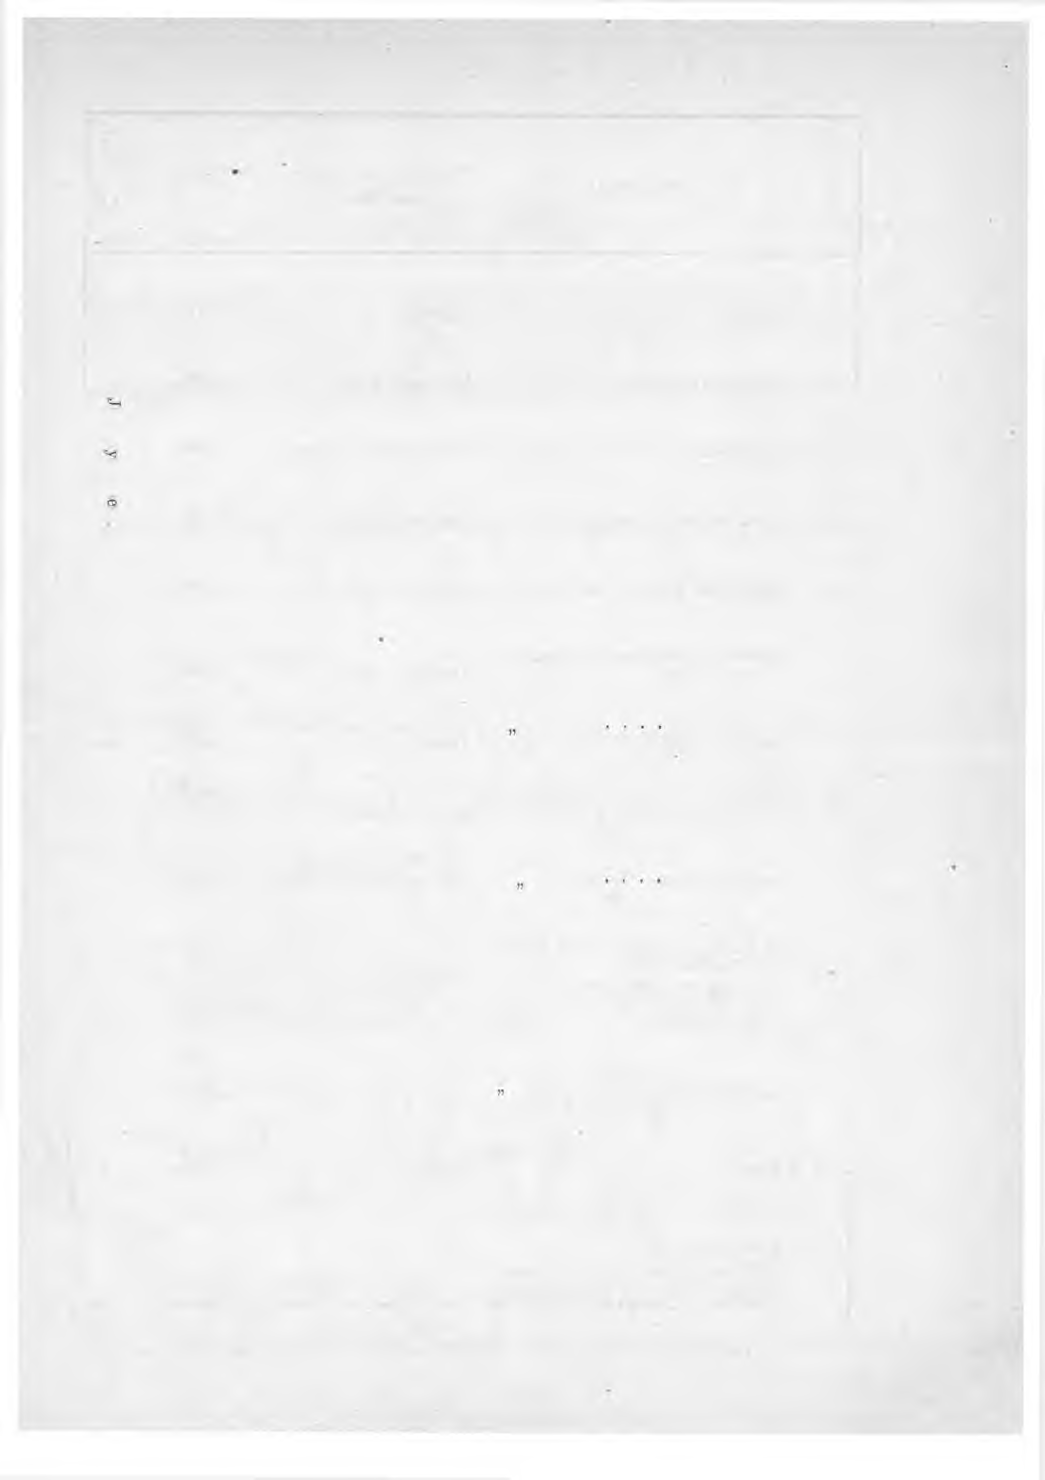 Taulu, näyttävä postinkuljetustiet, arvorajoitukset ja vakuutusmaksut raha- ja arvokirjeistä niihin maihin, jotka ovat yhtyneet AVashingtonissa vuonna 1897 tehtyyn- arvolcirjeitten vaihtoa